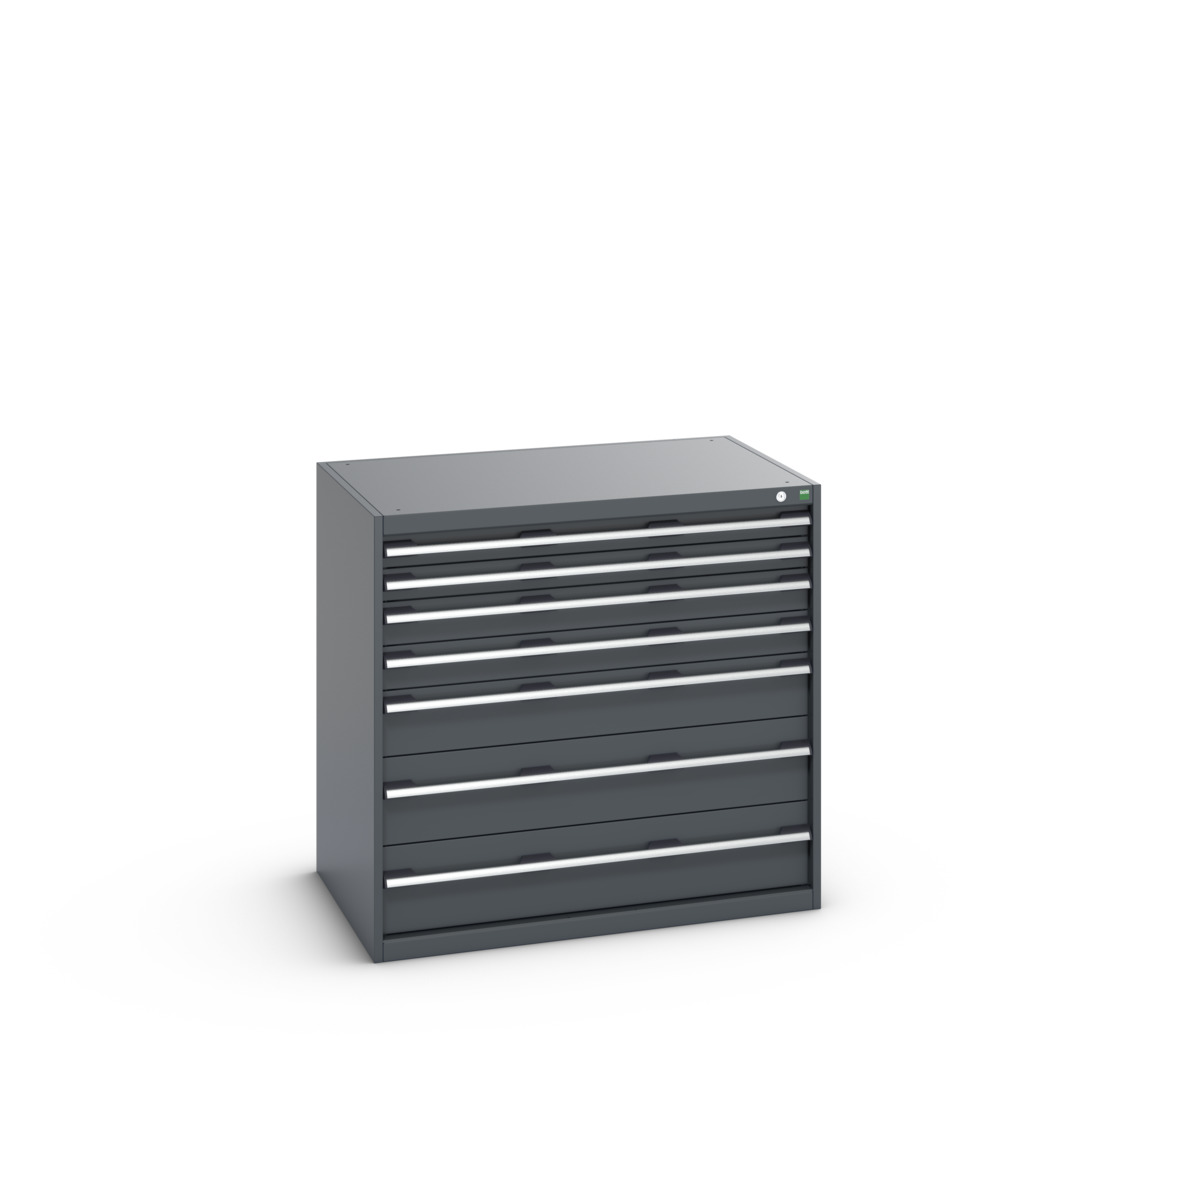 40029022.77V - cubio drawer cabinet